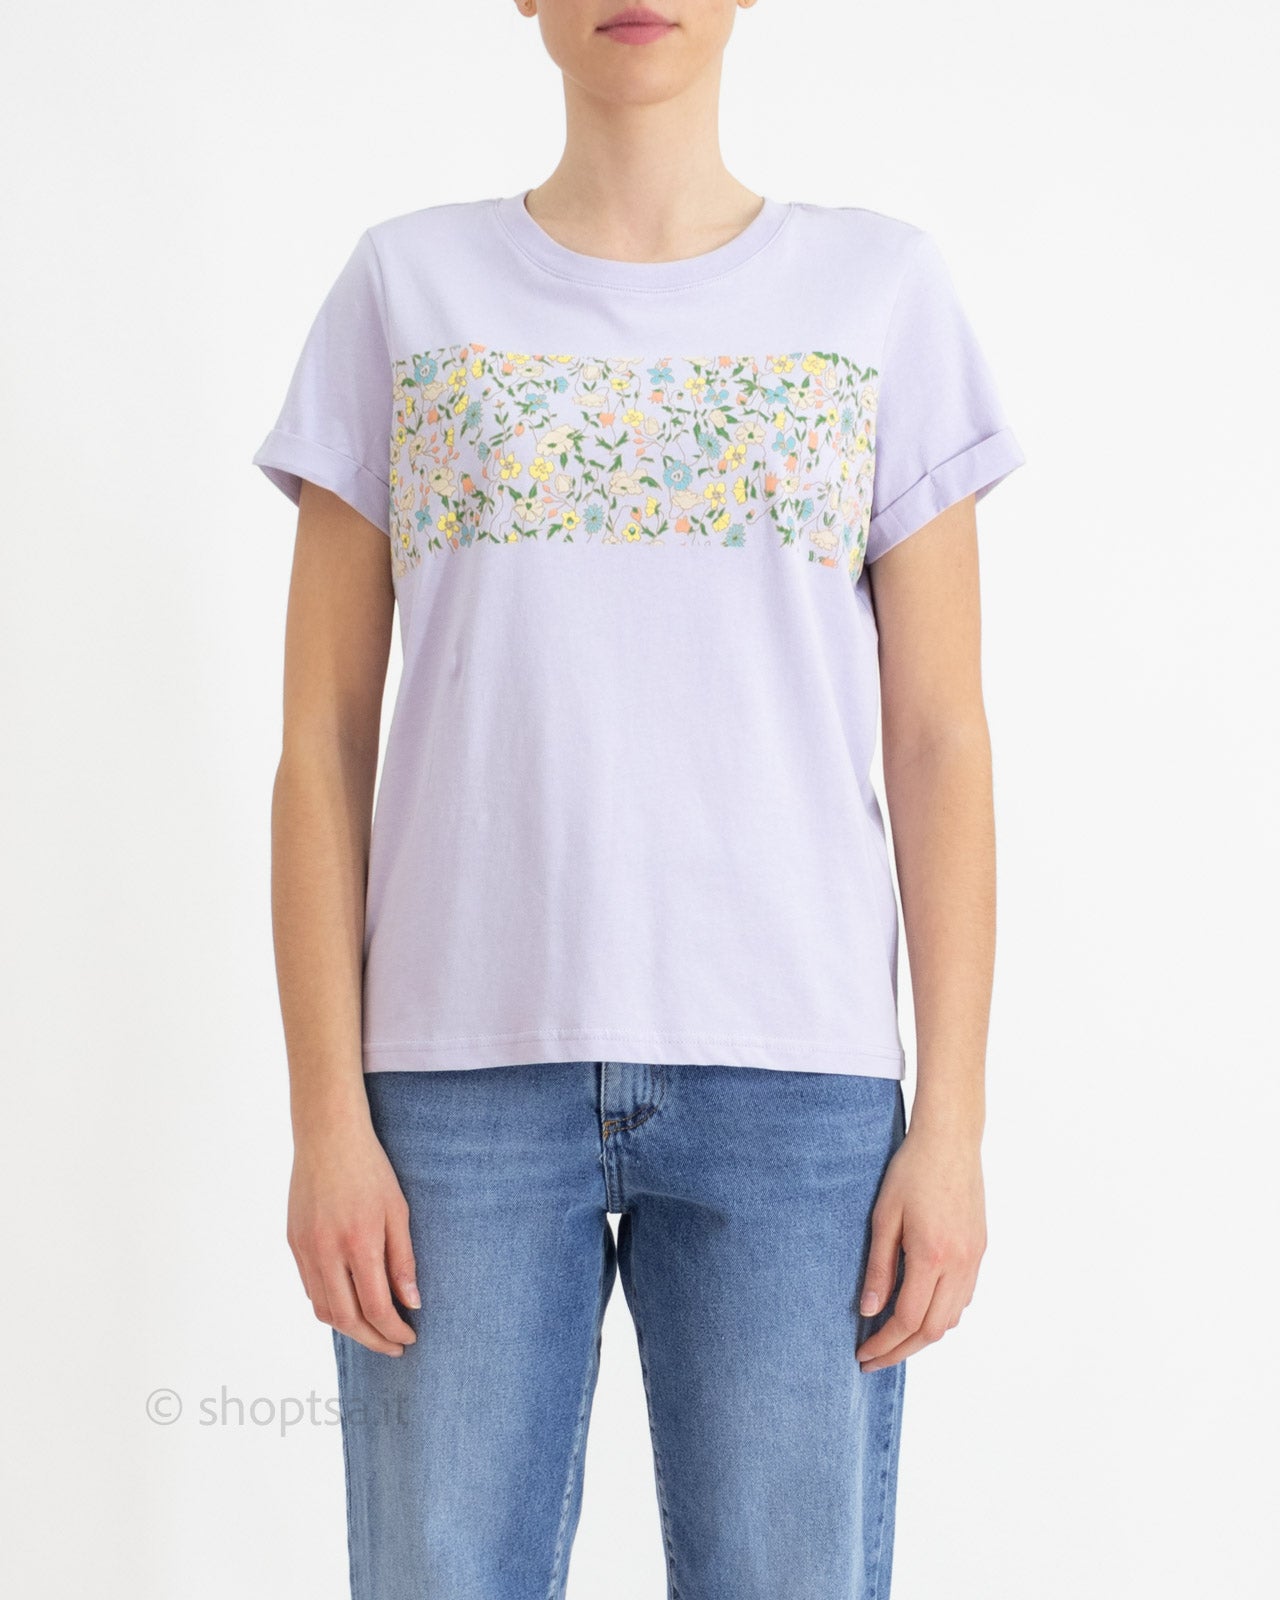 Lilac organic cotton t-shirt